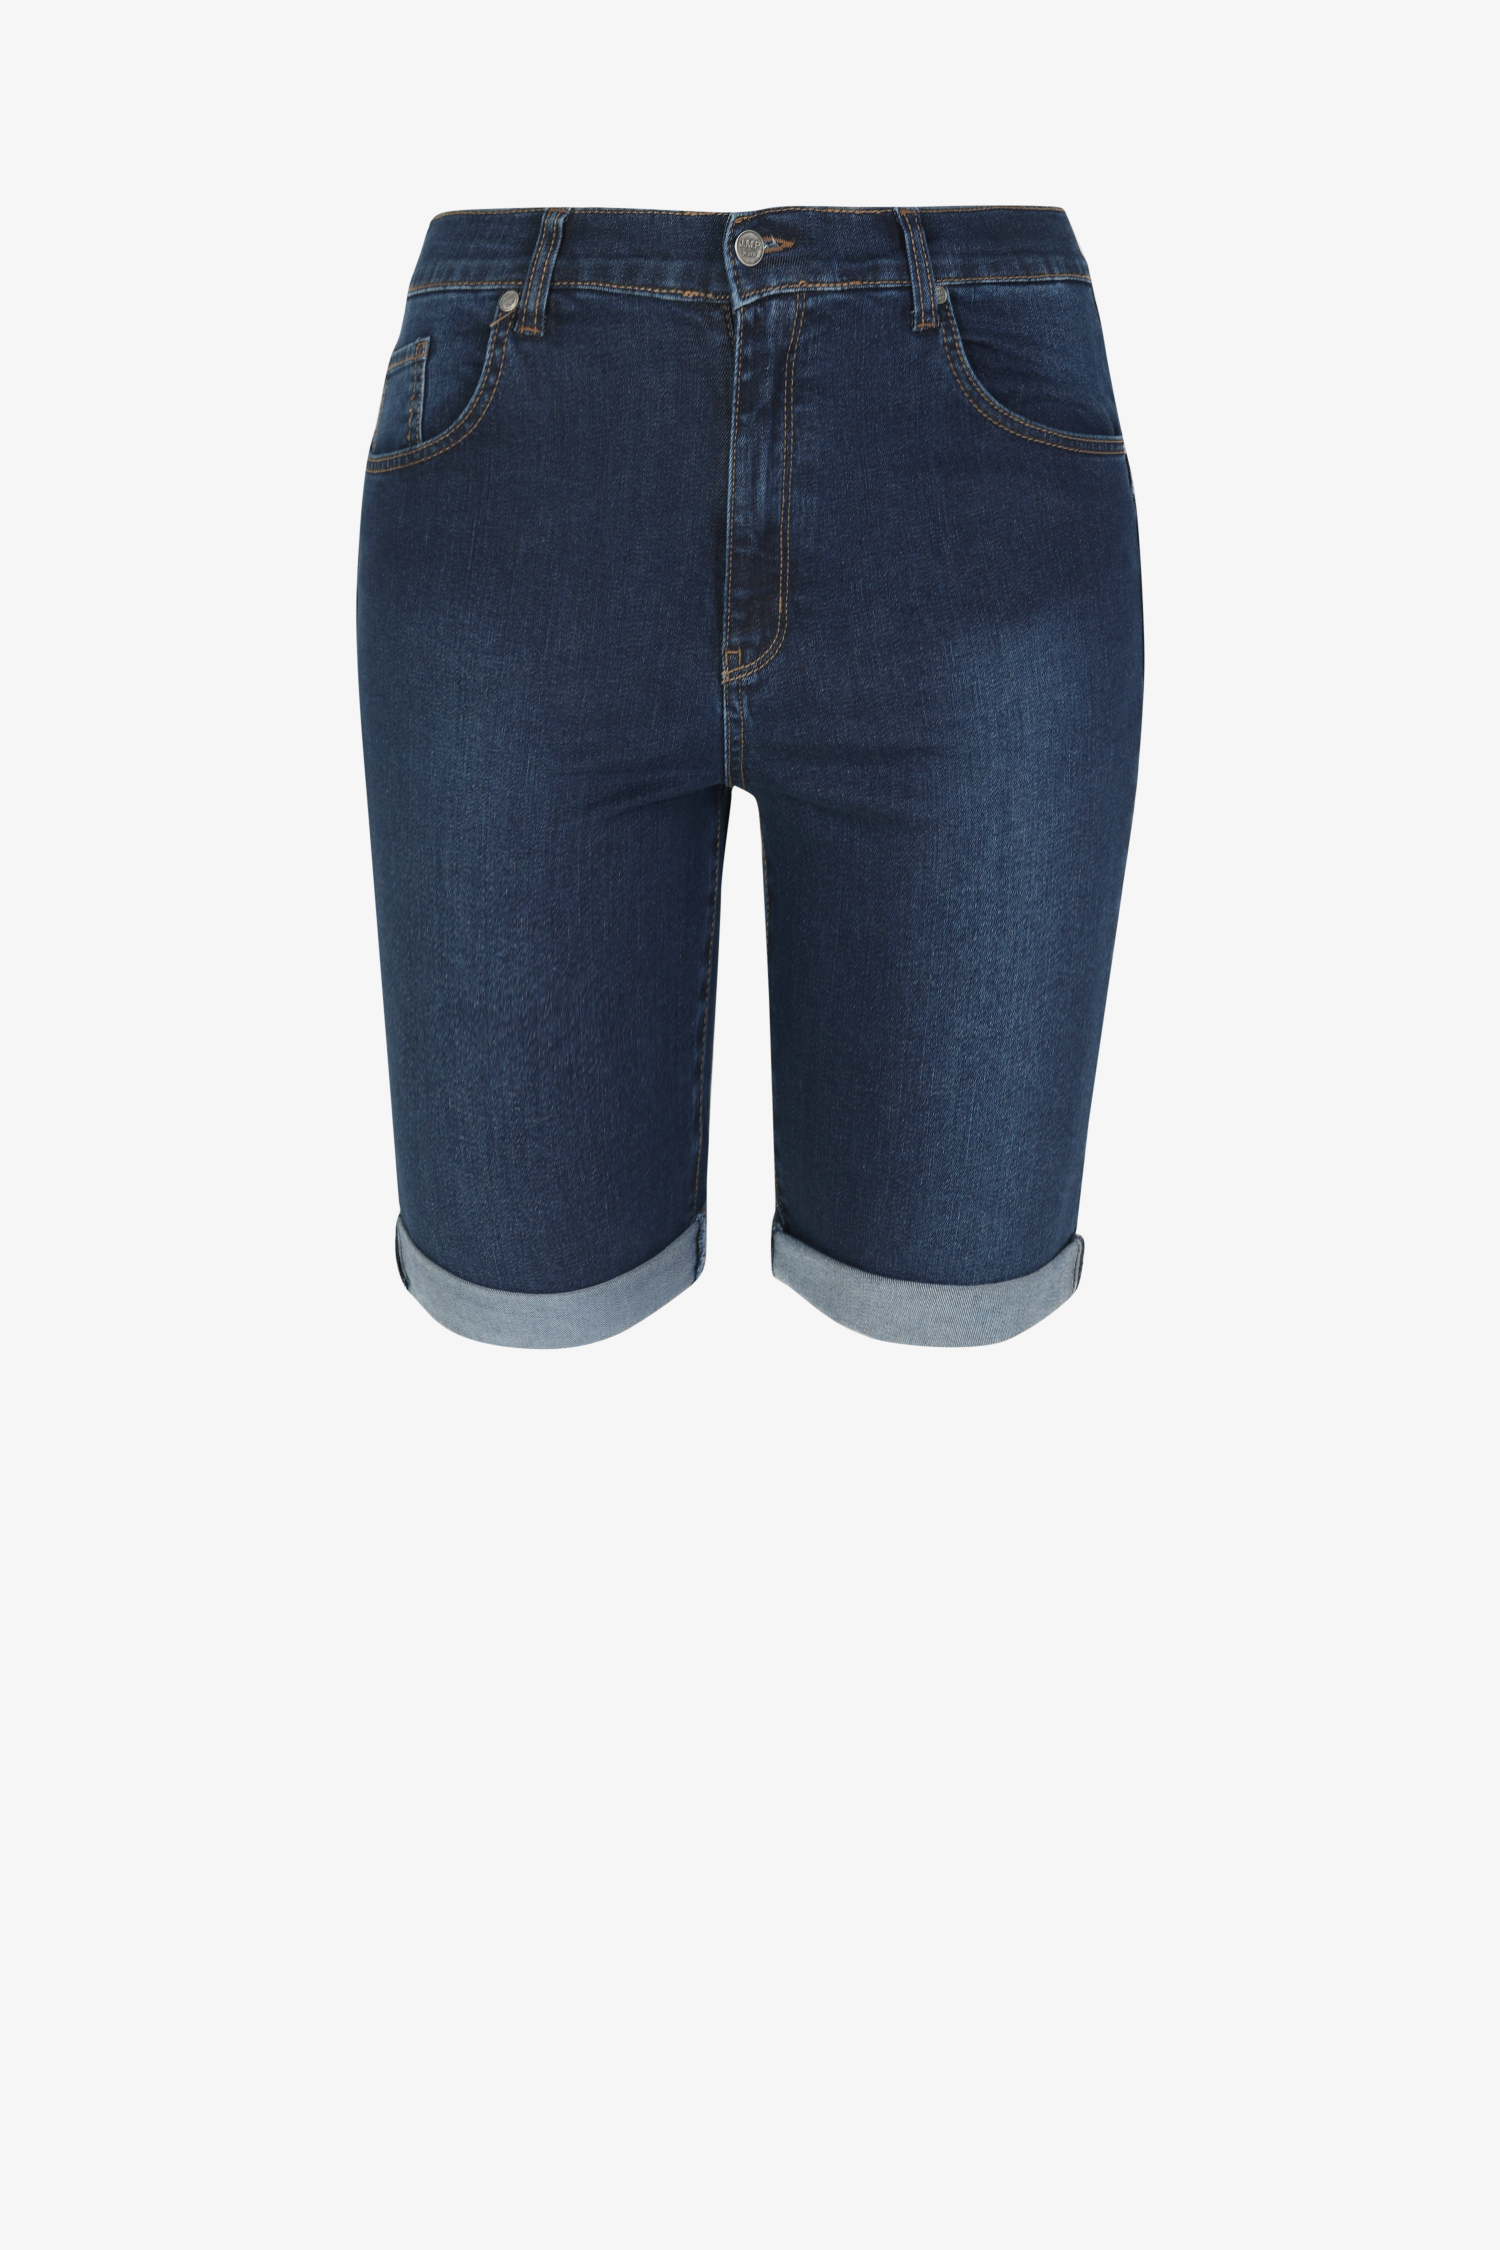 Bermuda shorts in jeans